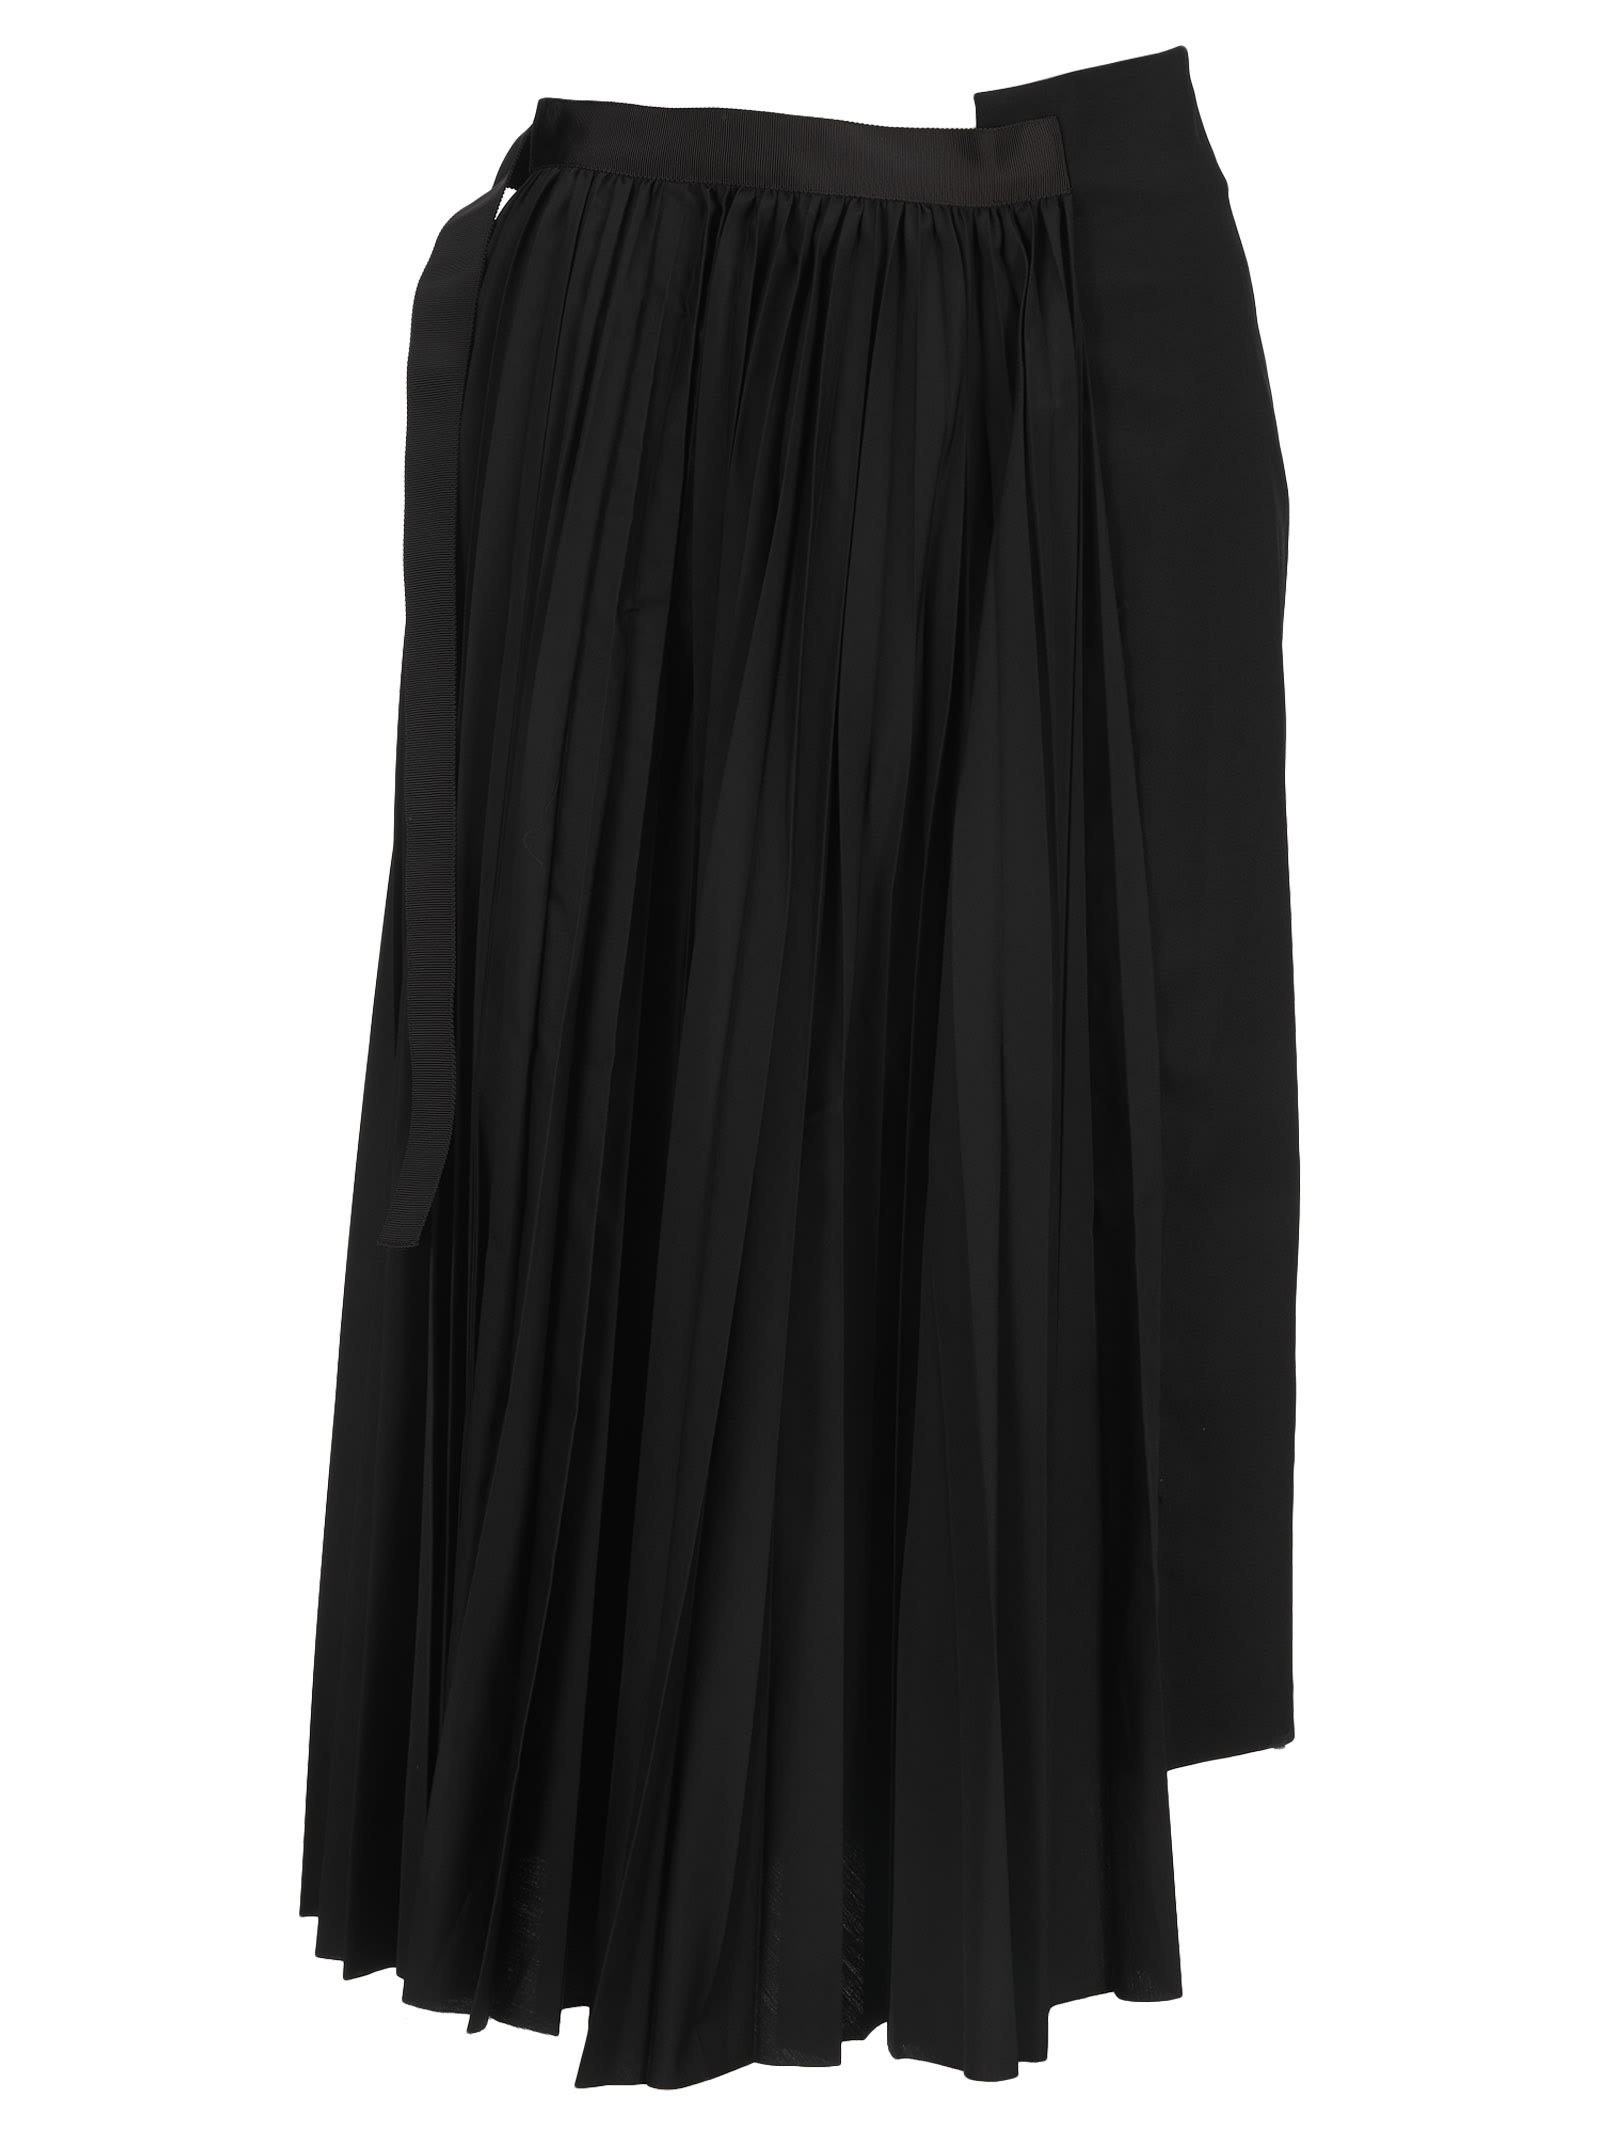 Sacai Asymmetric Pleated Skirt